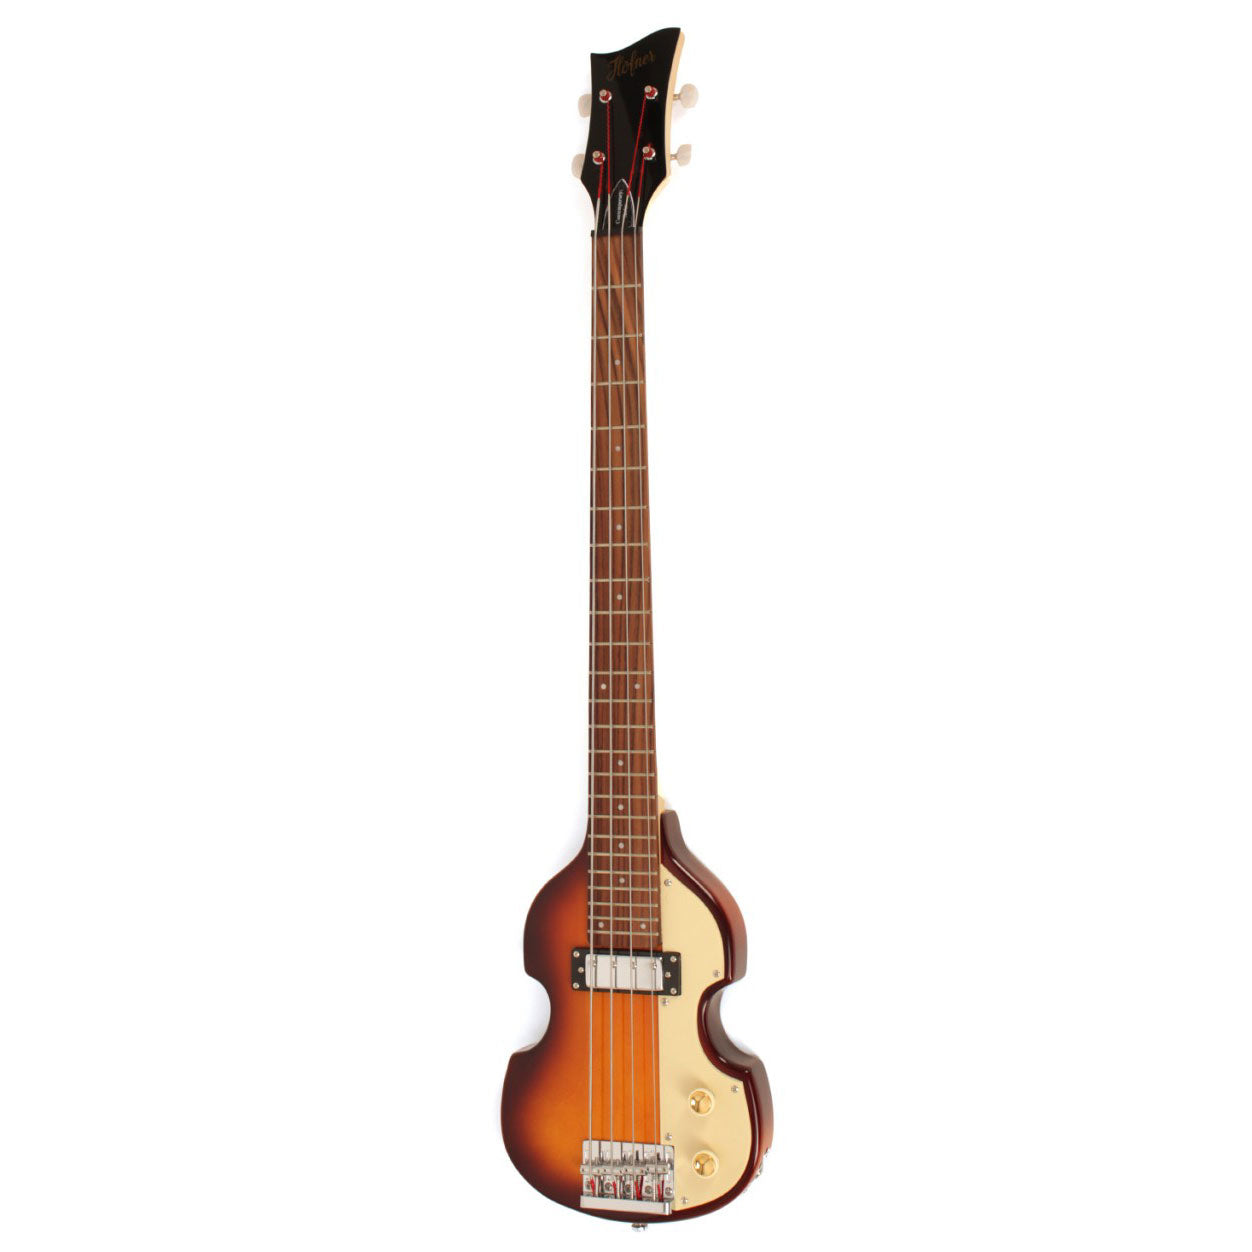 Hofner Contemporary Shorty Violin Bass in Sunburst